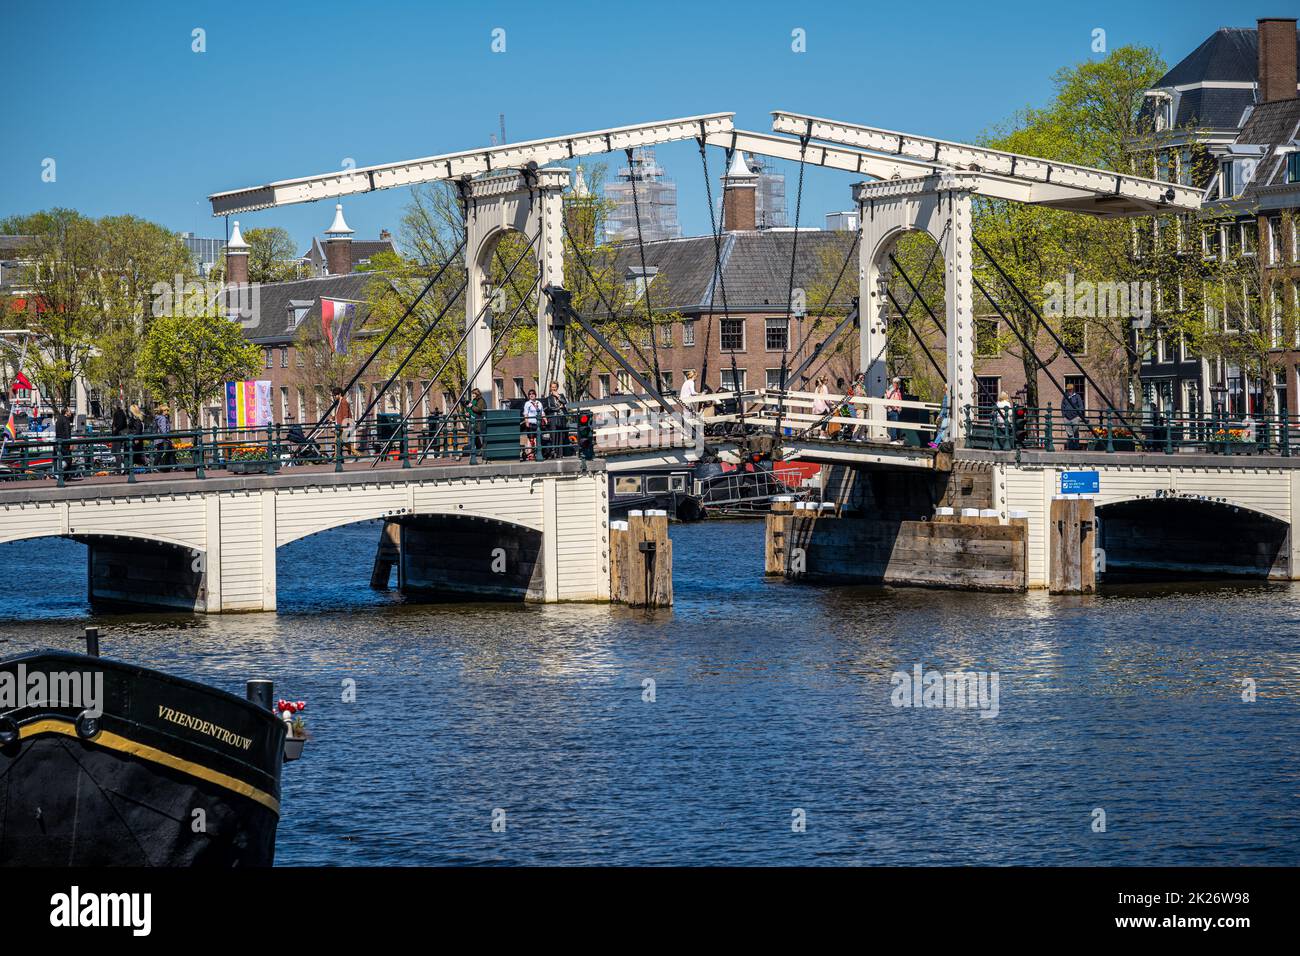 de magere brug or ‘skinny bridge’, Amsterdam Stock Photo